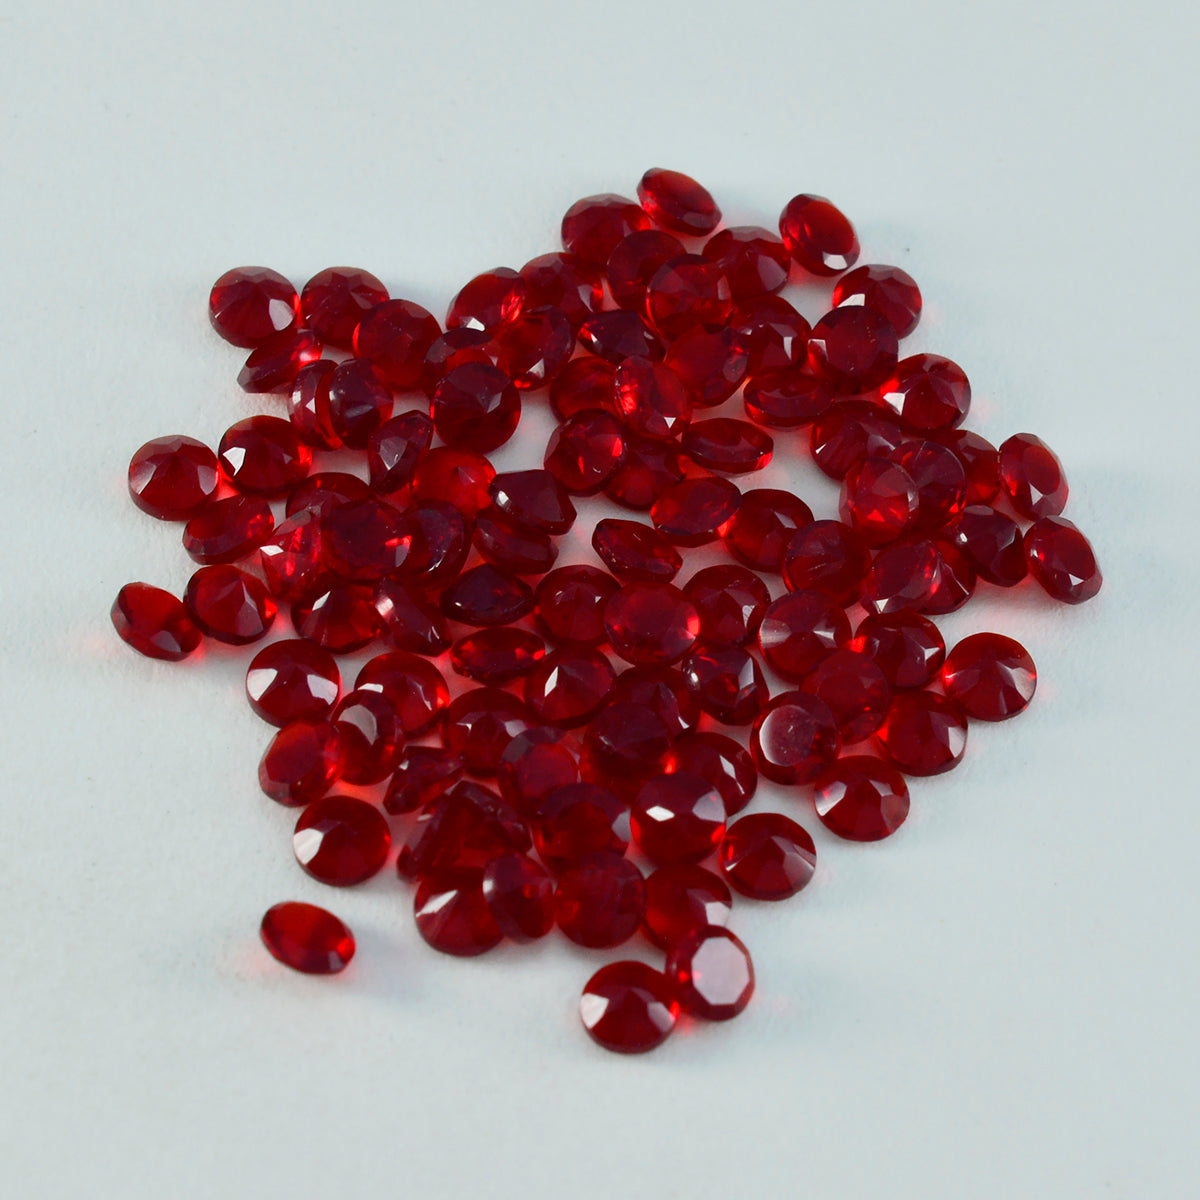 Riyogems 1 pieza rubí rojo cz facetado 2x2 mm forma redonda gema de calidad aaa